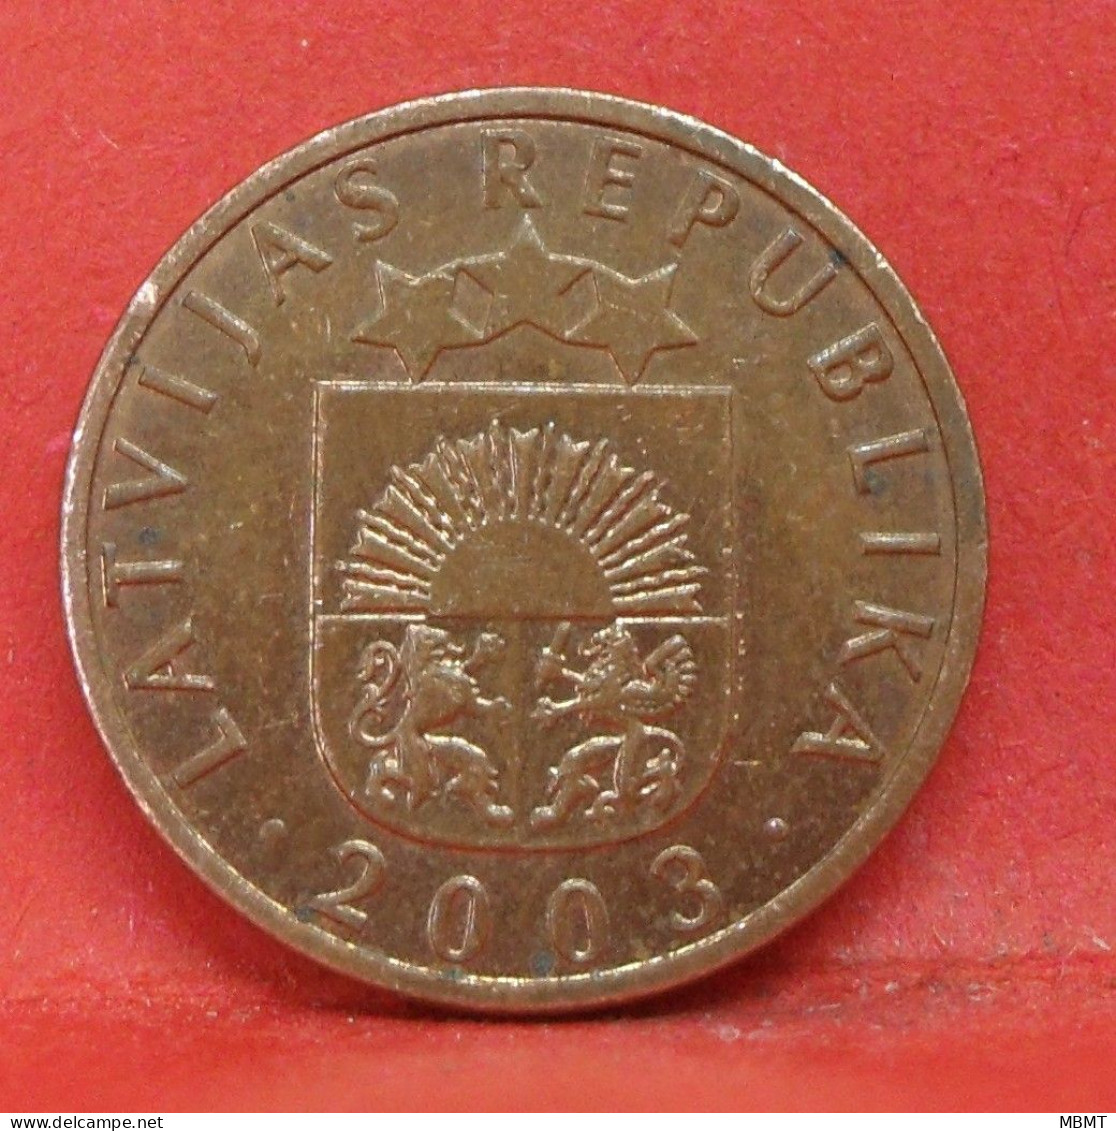 1 Santims 2003 - TTB - Pièce De Monnaie Lettonie - Article N°3631 - Latvia